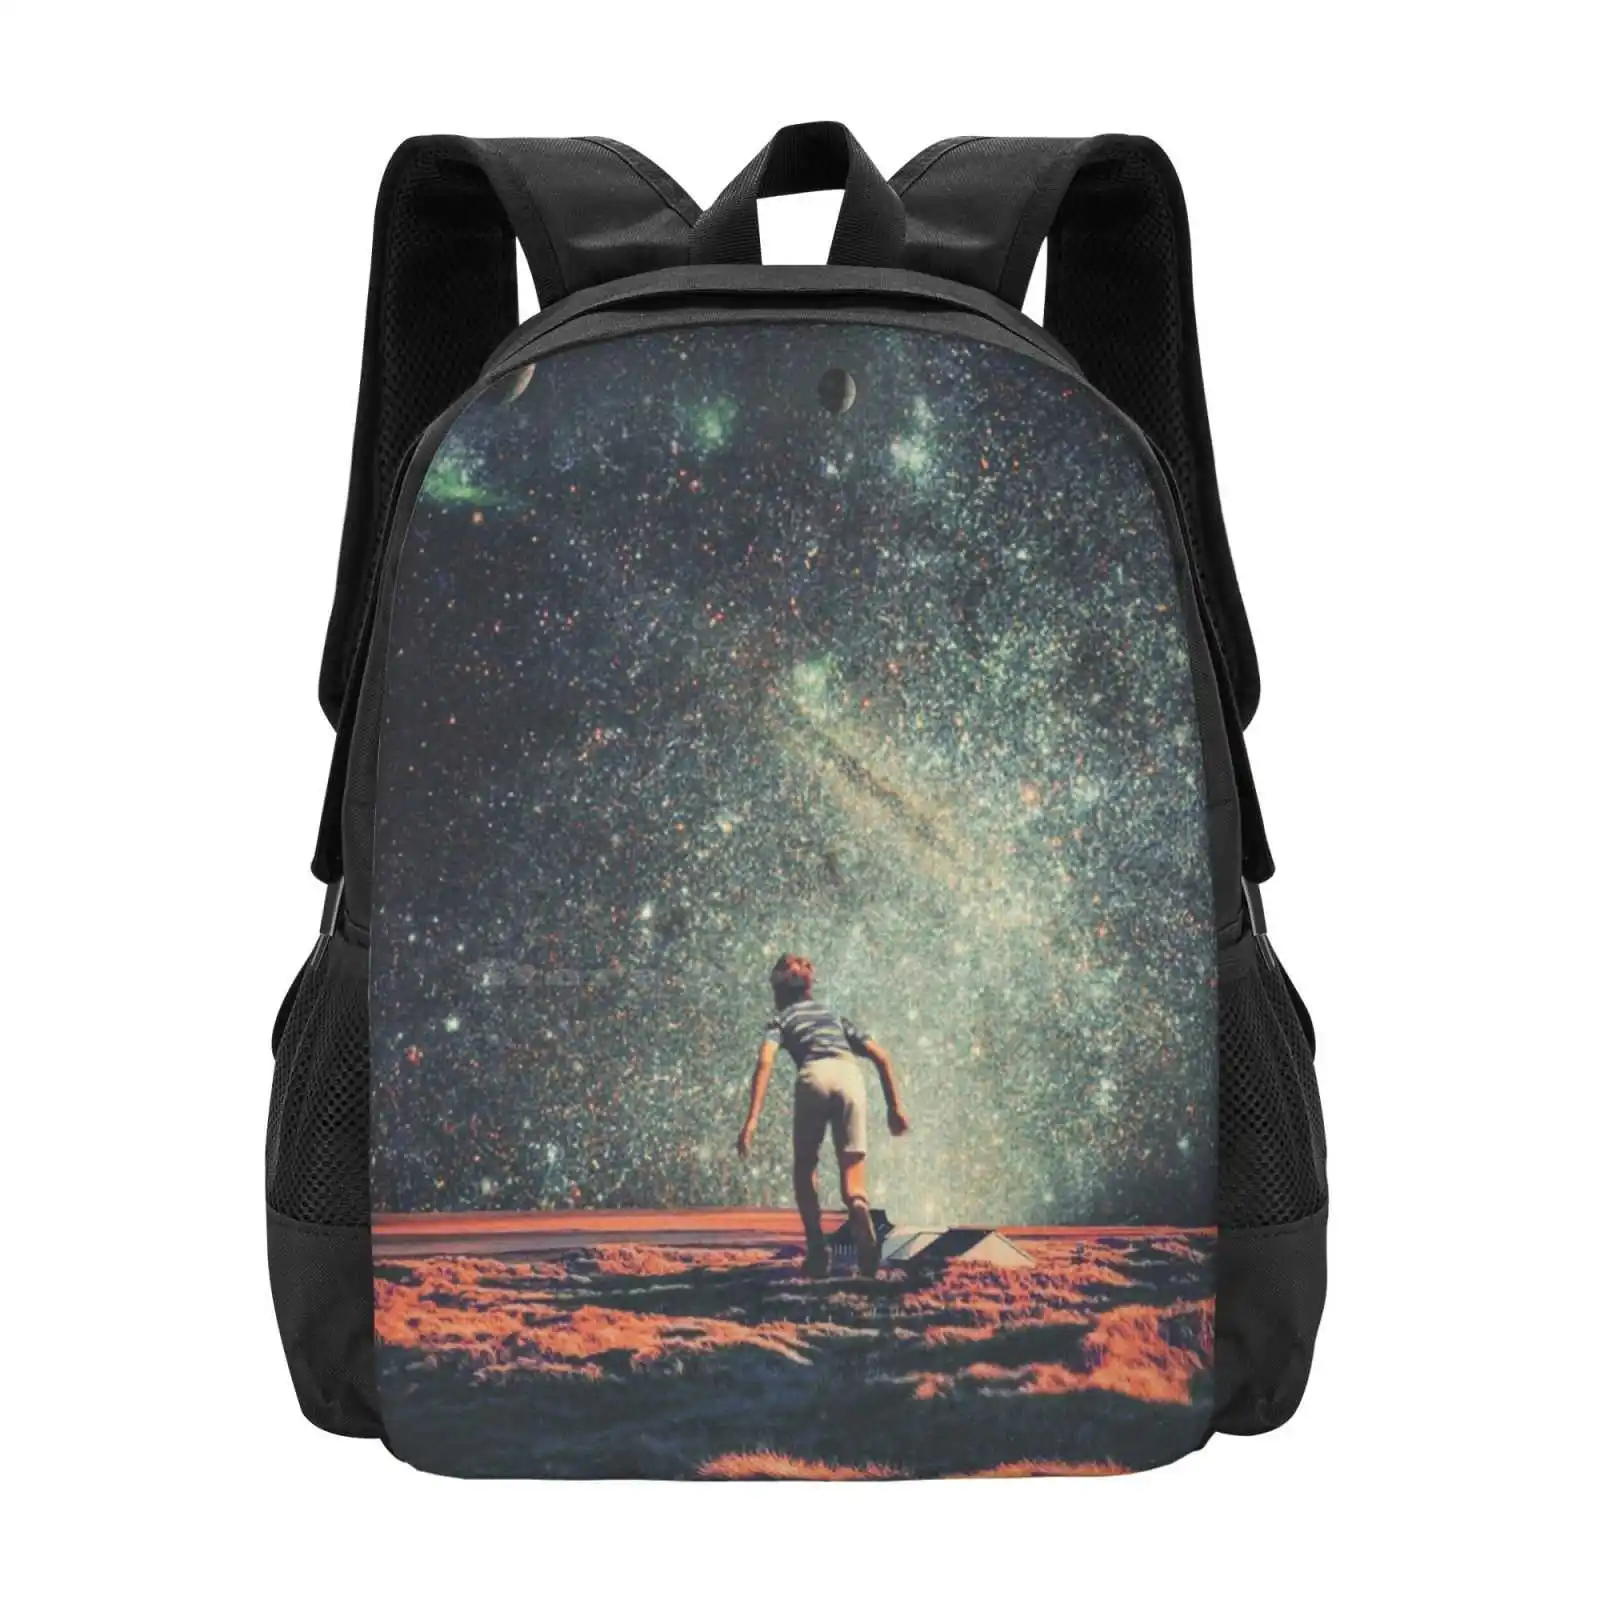 

Рюкзак с ностальгией для студентов, школьный дорожный портфель для ноутбука, винтажный коллаж Фрэнка моли, поп-арт, космос, Вселенная, ретро будущее для детей